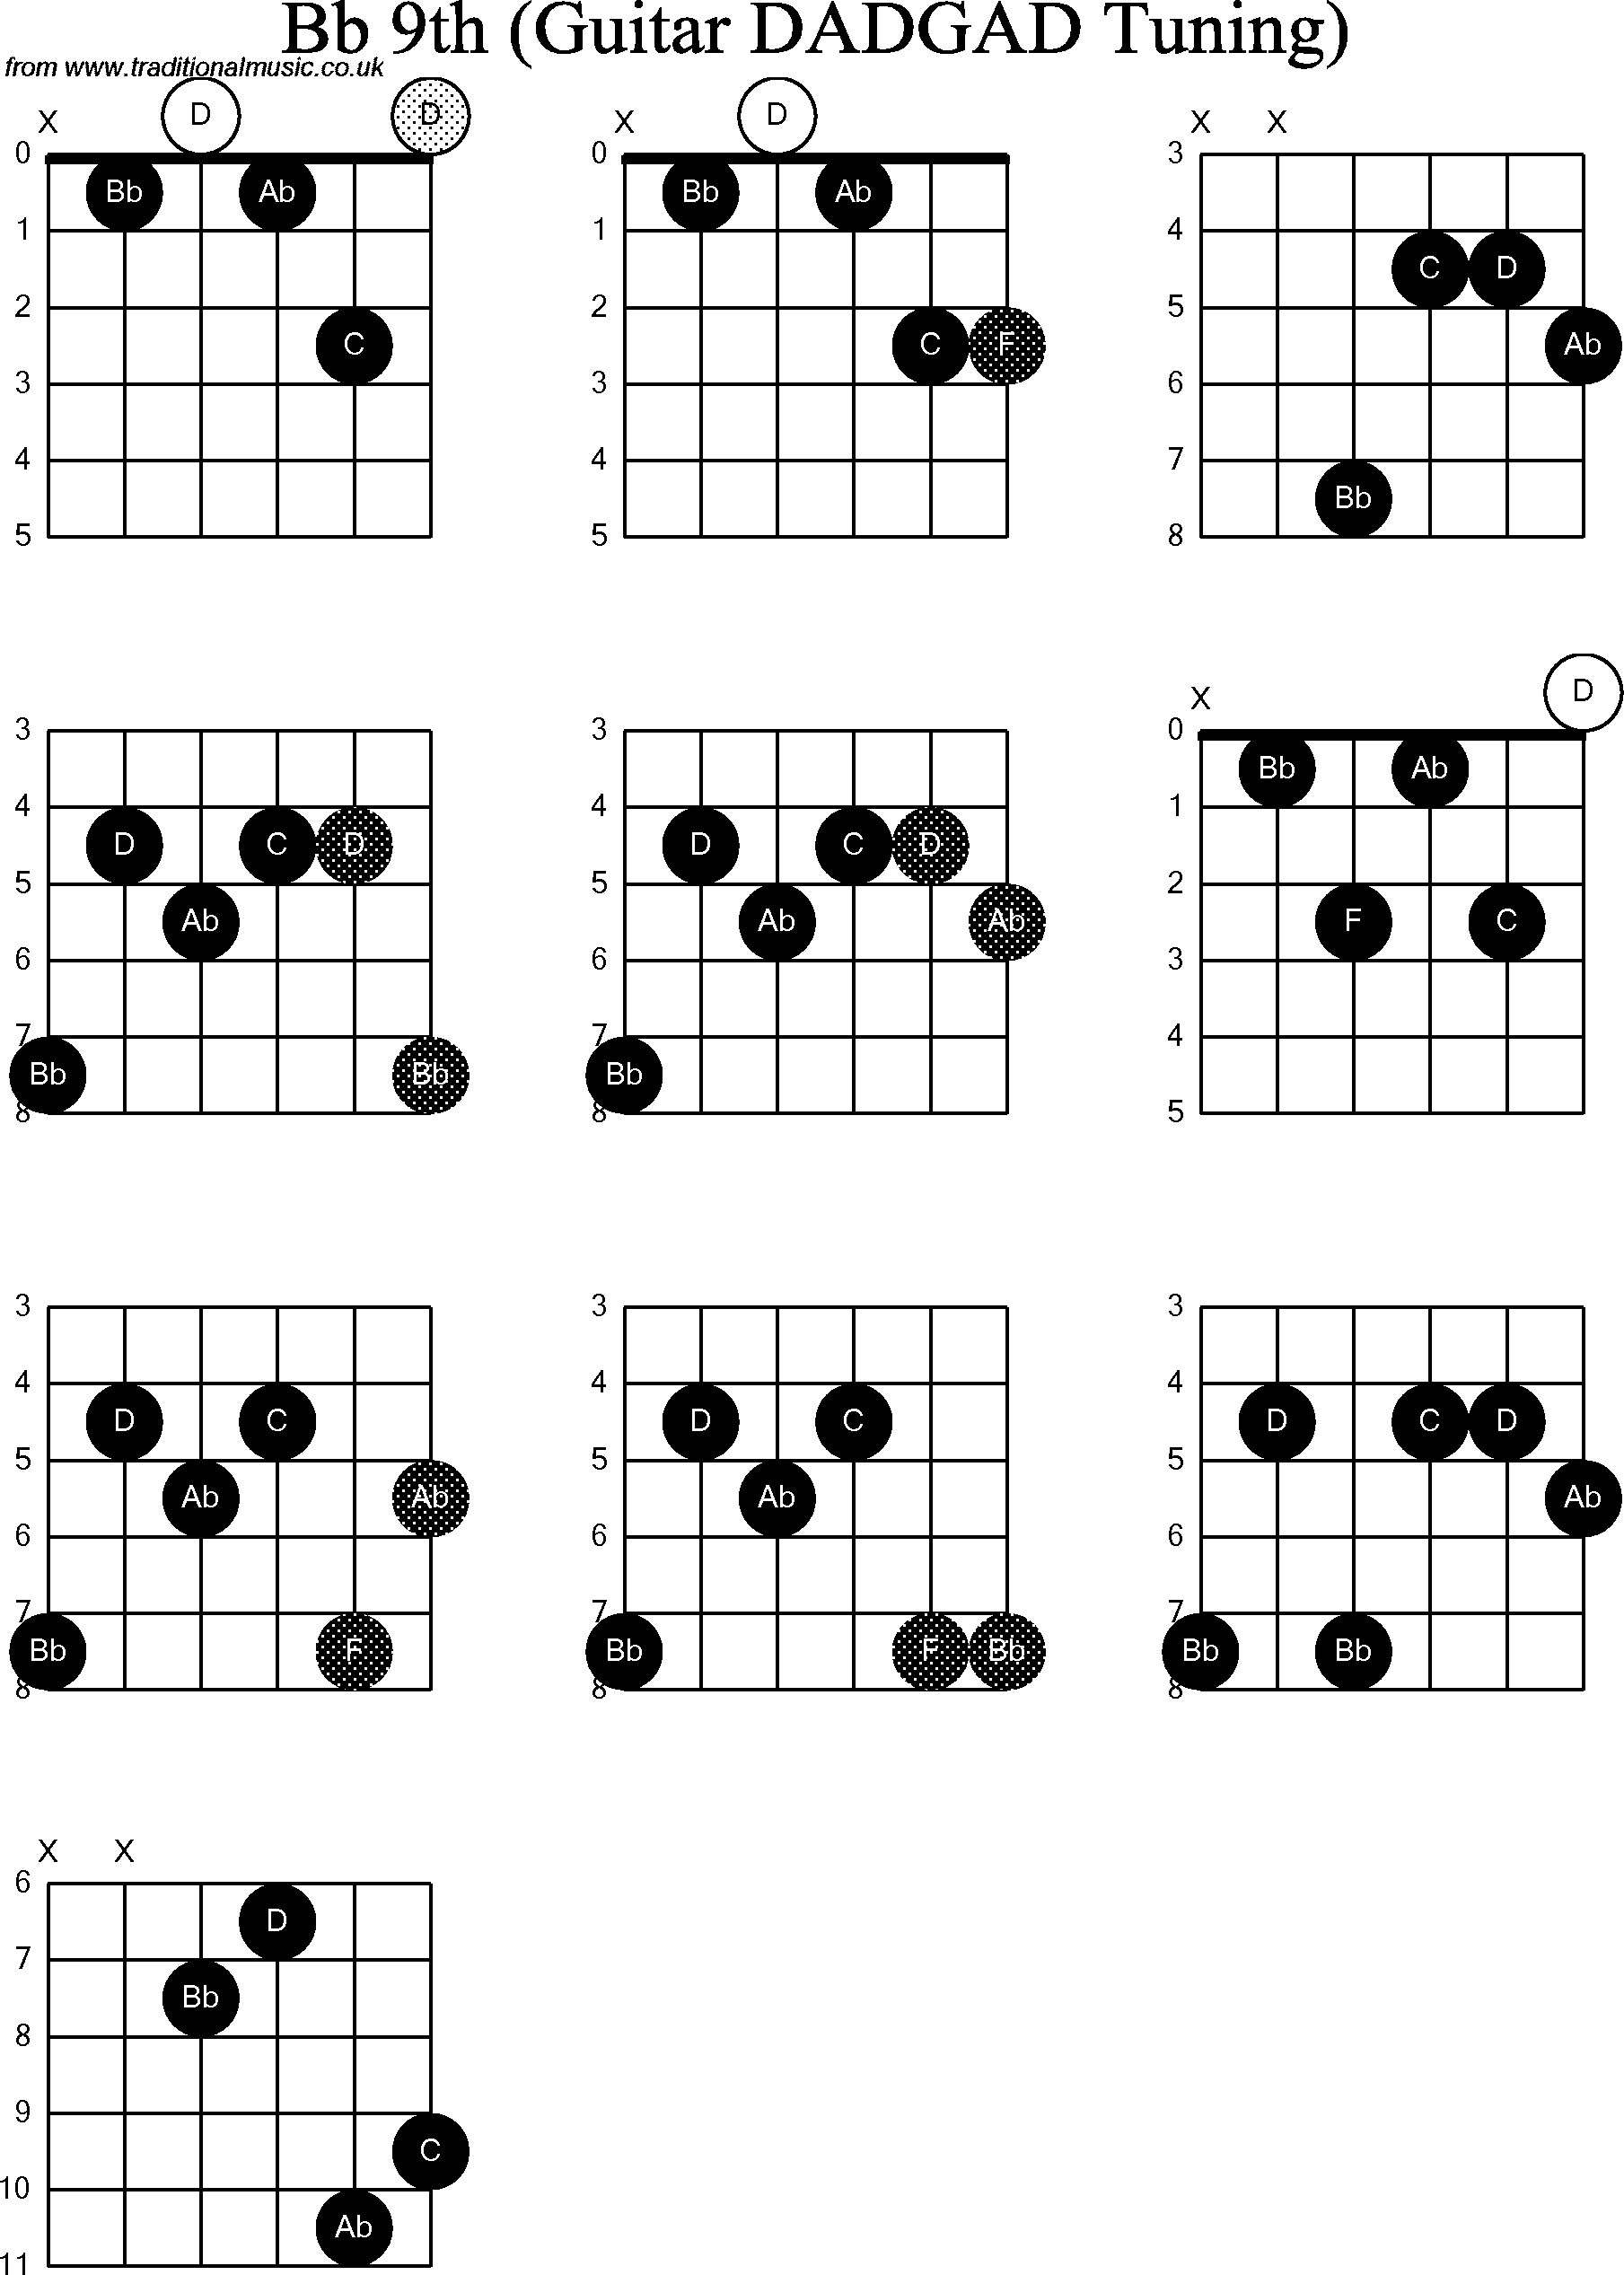 Chord Diagrams for D Modal Guitar(DADGAD), Bb9th